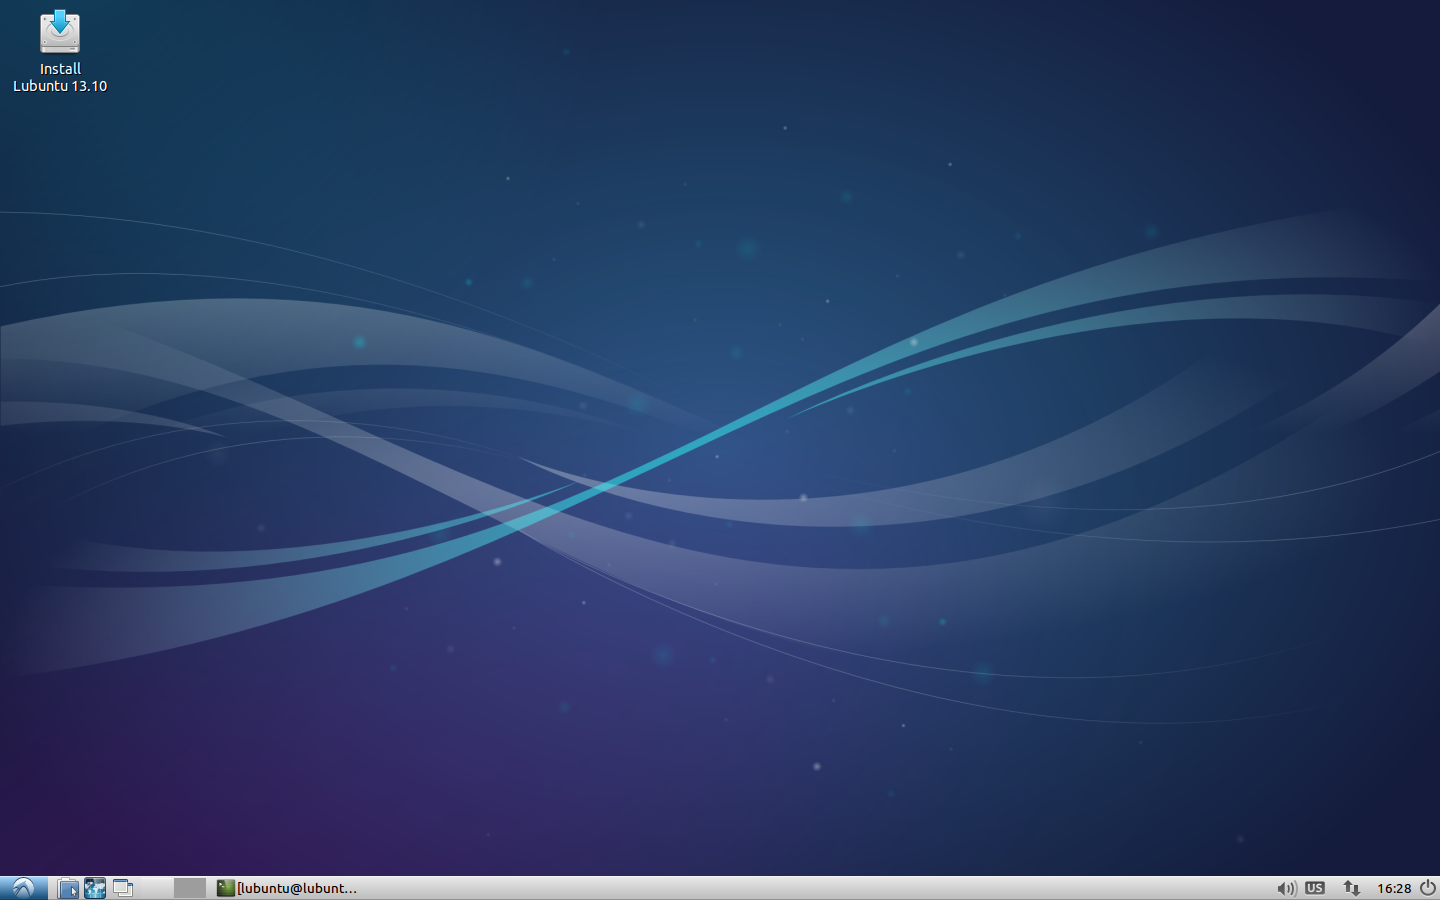 25.-Lubuntu-20.10-wallpaper.png